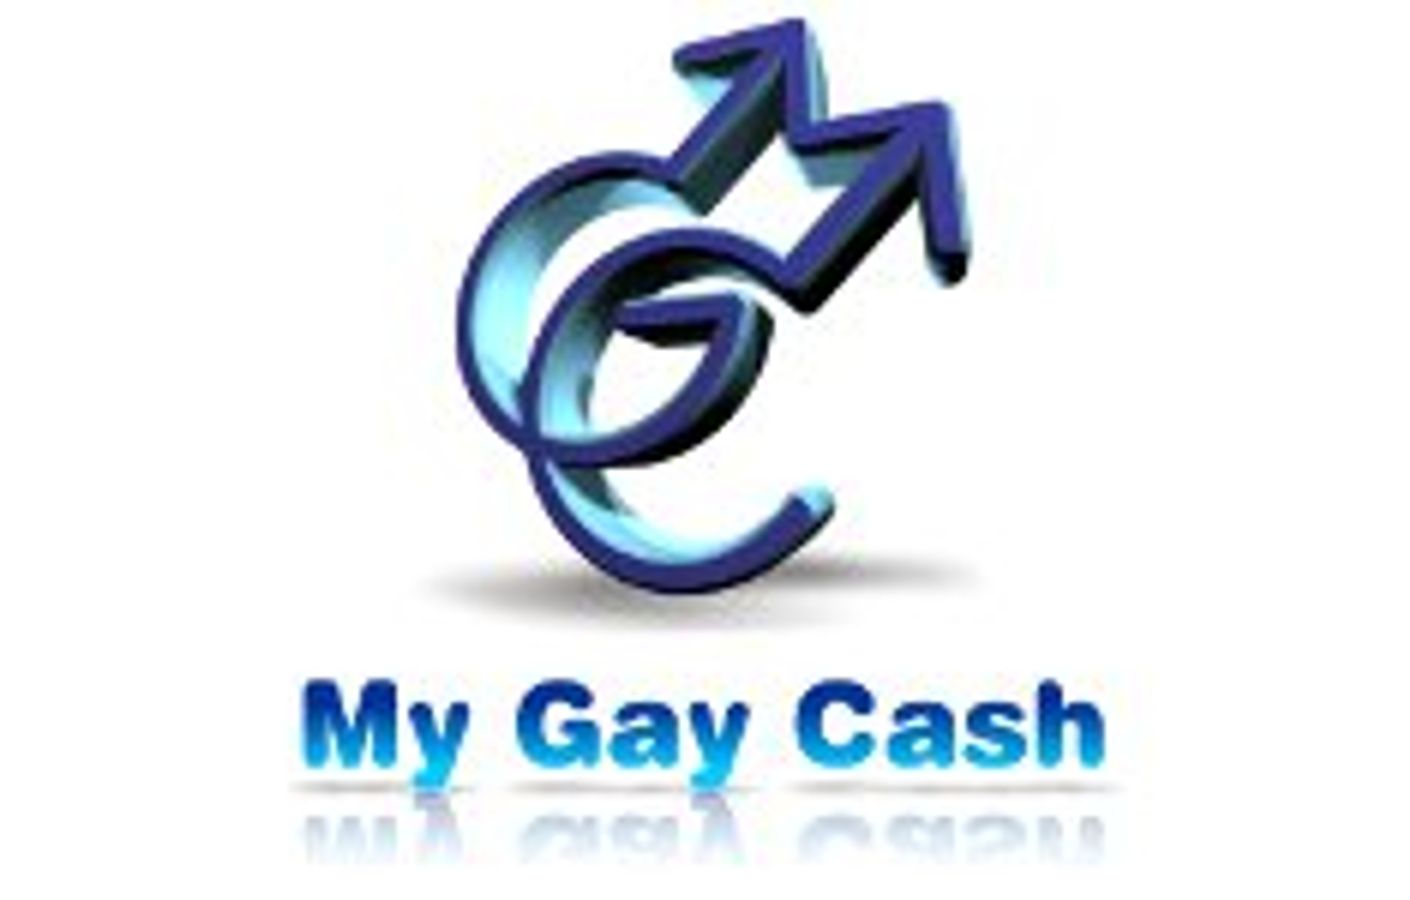 MyGayCash.com